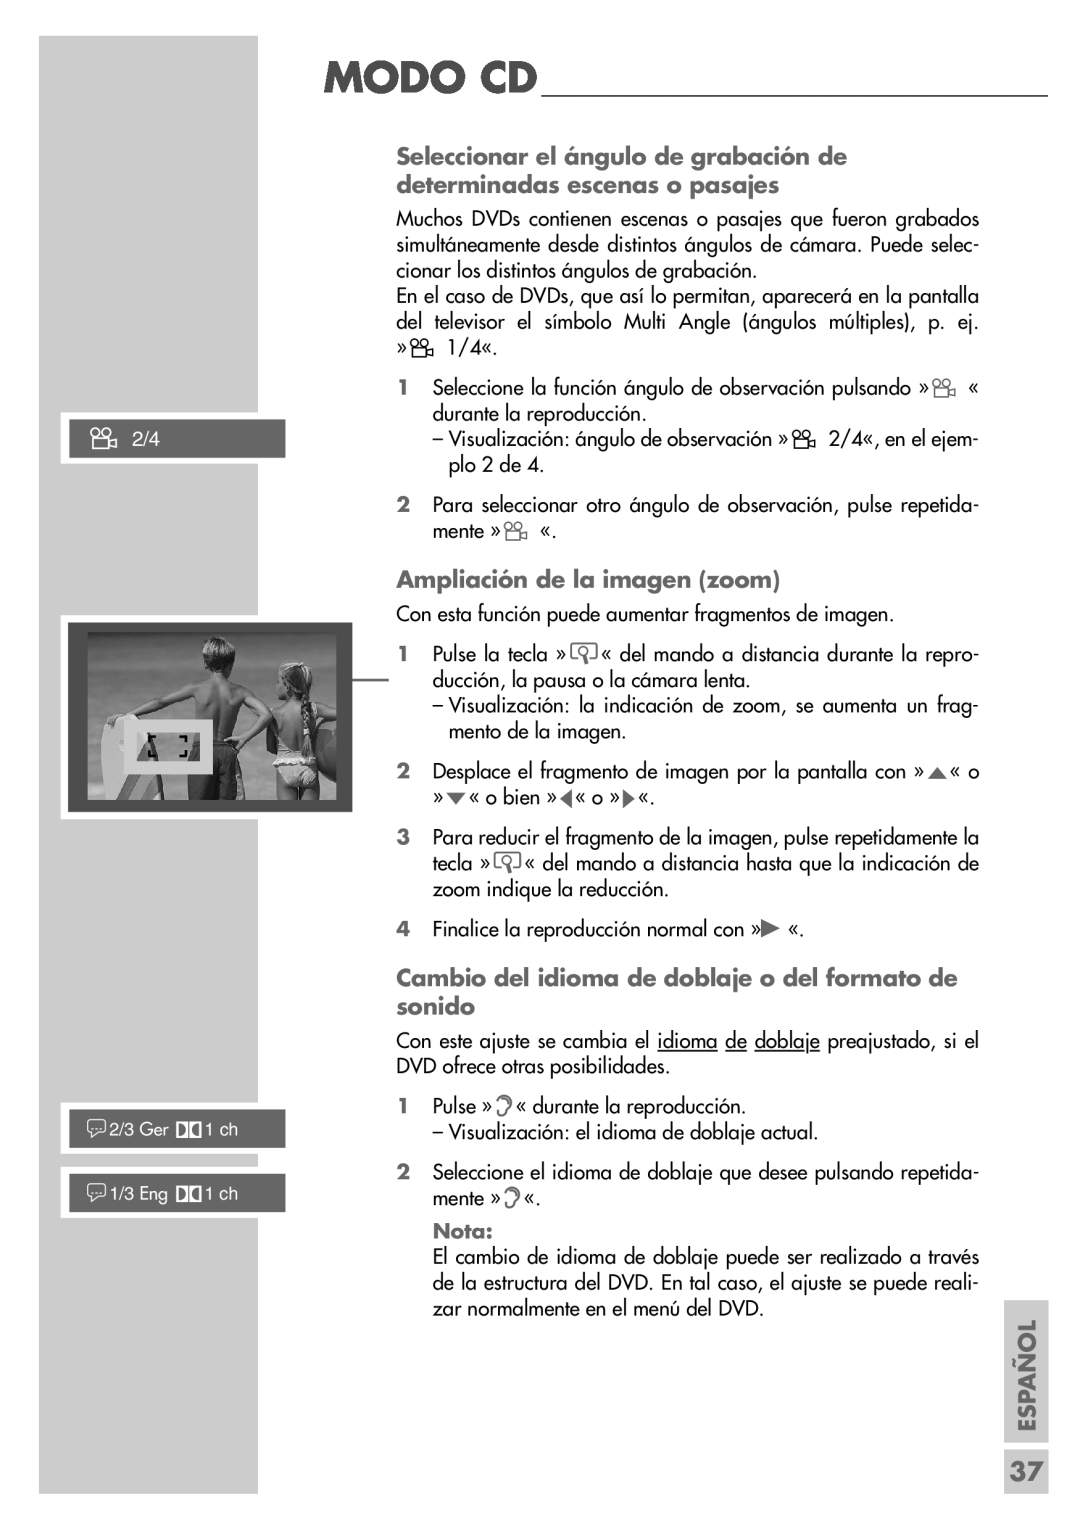 Grundig DR 5400 DD manual Ampliación de la imagen zoom, n2/4, Español 